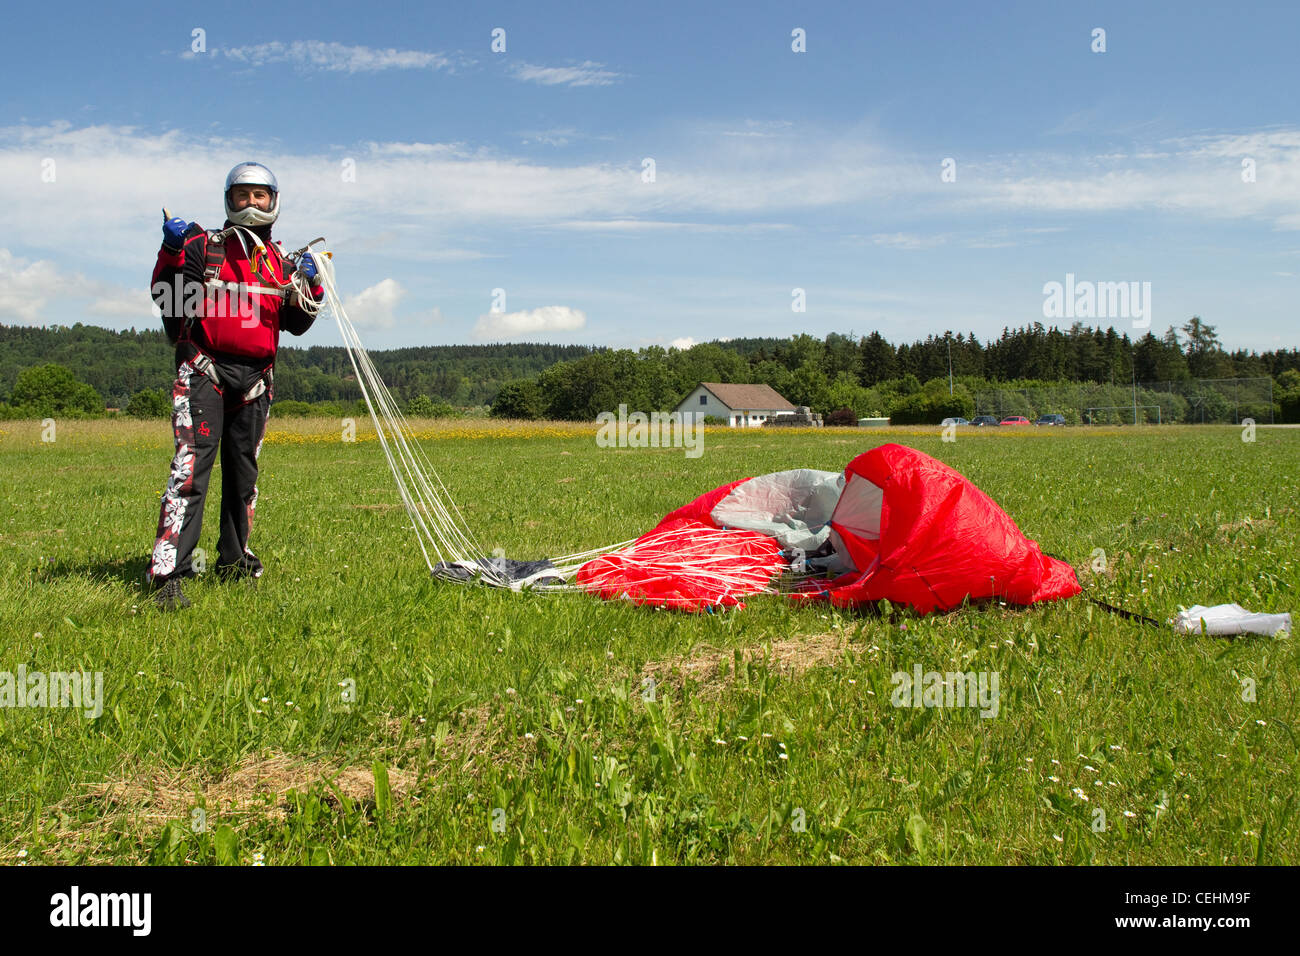 Fallschirmspringer freut sich über fünfzig nach ein erfolgreichen Fallschirm springen. Er ist seinem Baldachin zusammenkommen und lächelnd in seinem Helm. Stockfoto